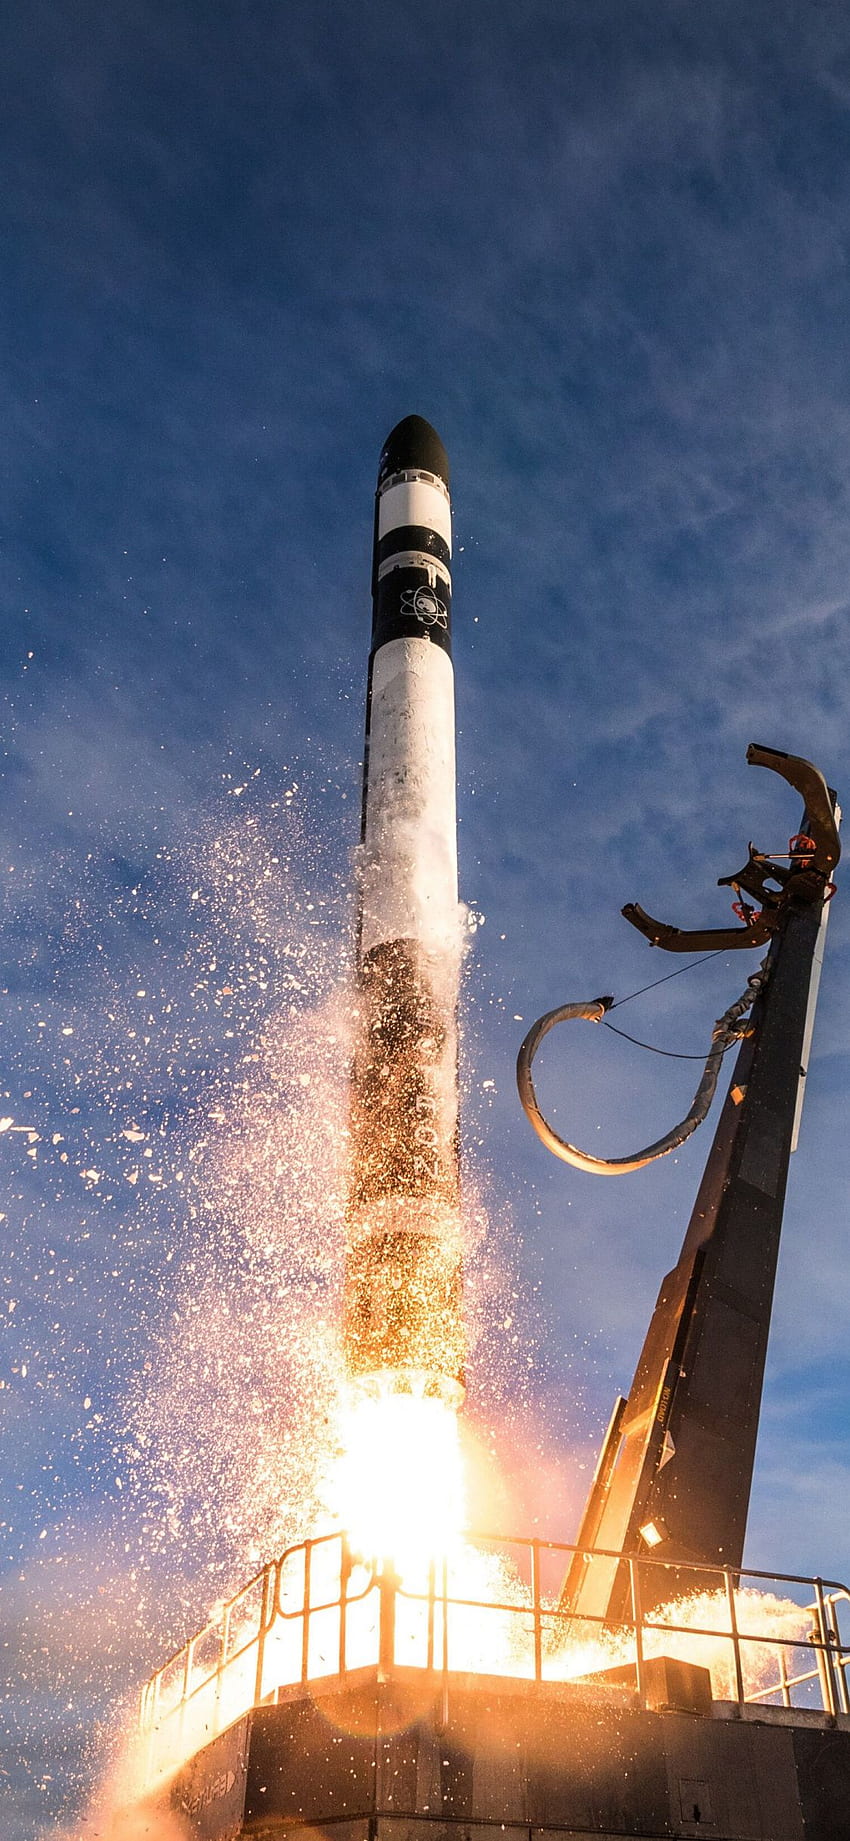 Peluncuran Roket, Asap, Langit, Awan, - Peluncuran ke-8 Lab Roket -, Kapal Roket wallpaper ponsel HD